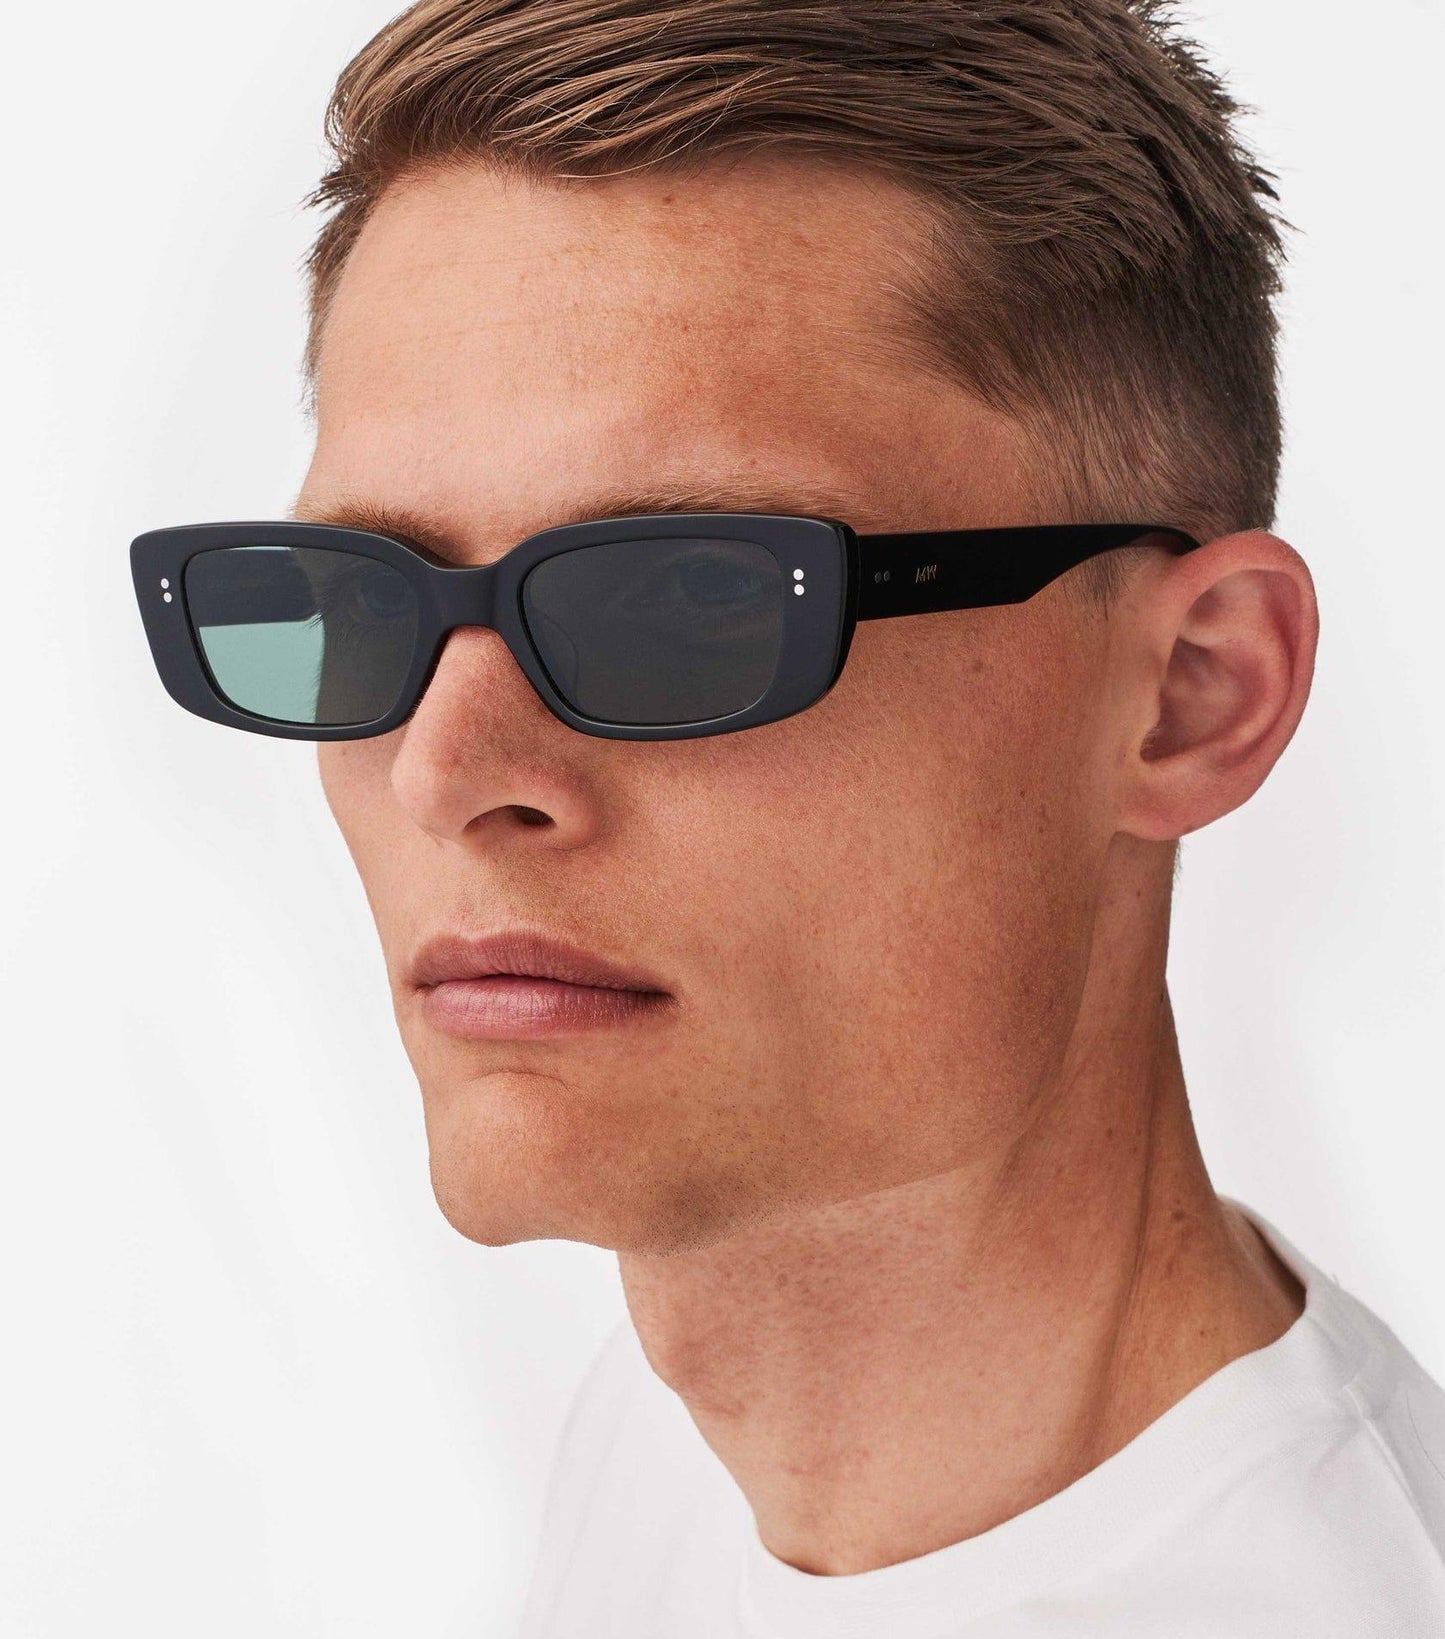 Grace, Rectagular sunglasses for men and women black green lens UV400 protection